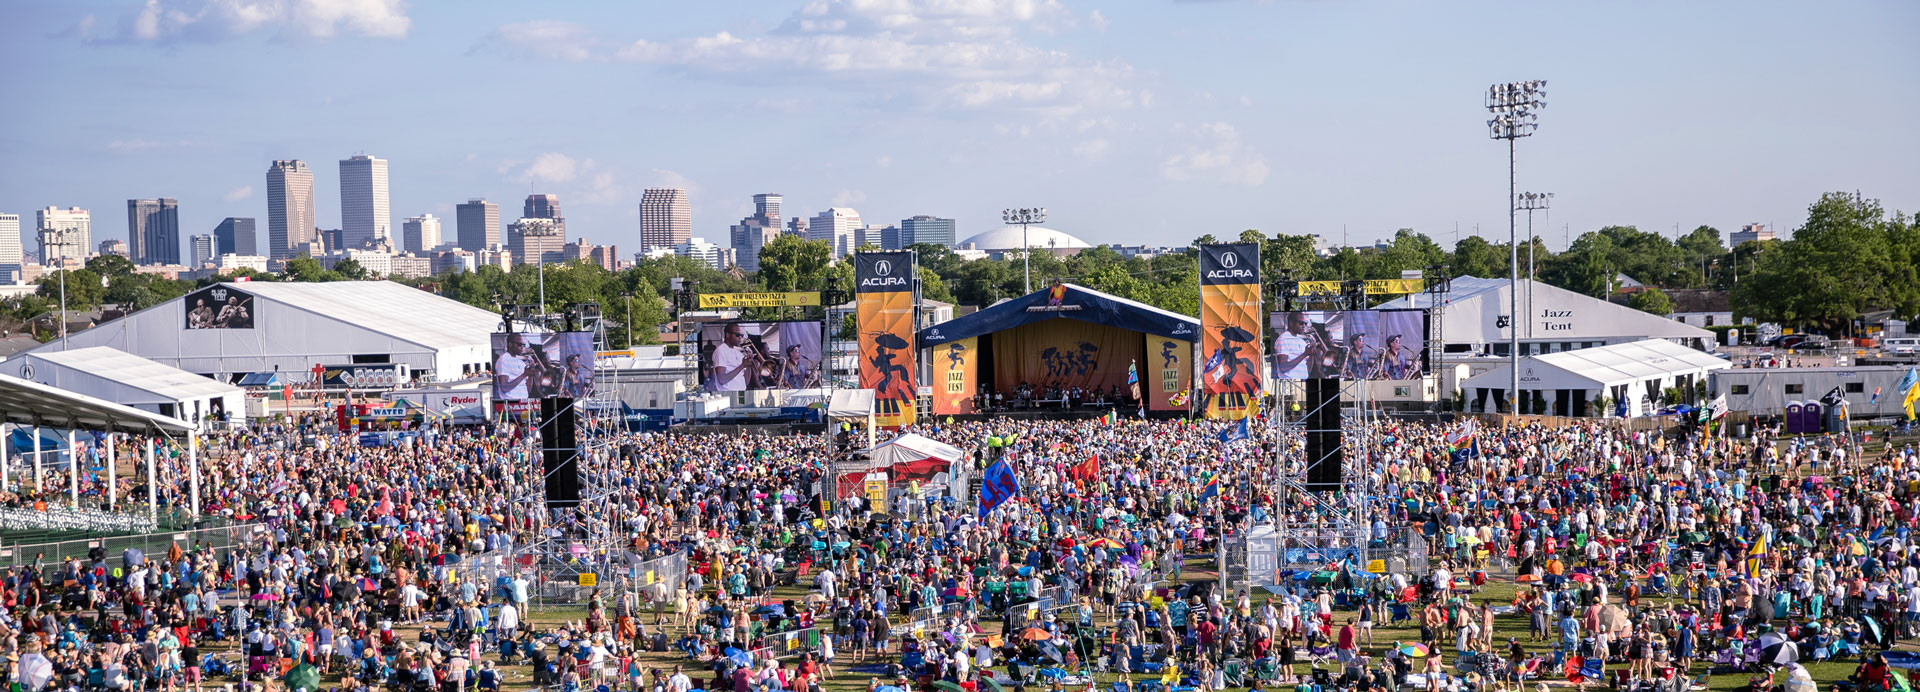 New Orleans Jazz Fest 2020 postponed 2020